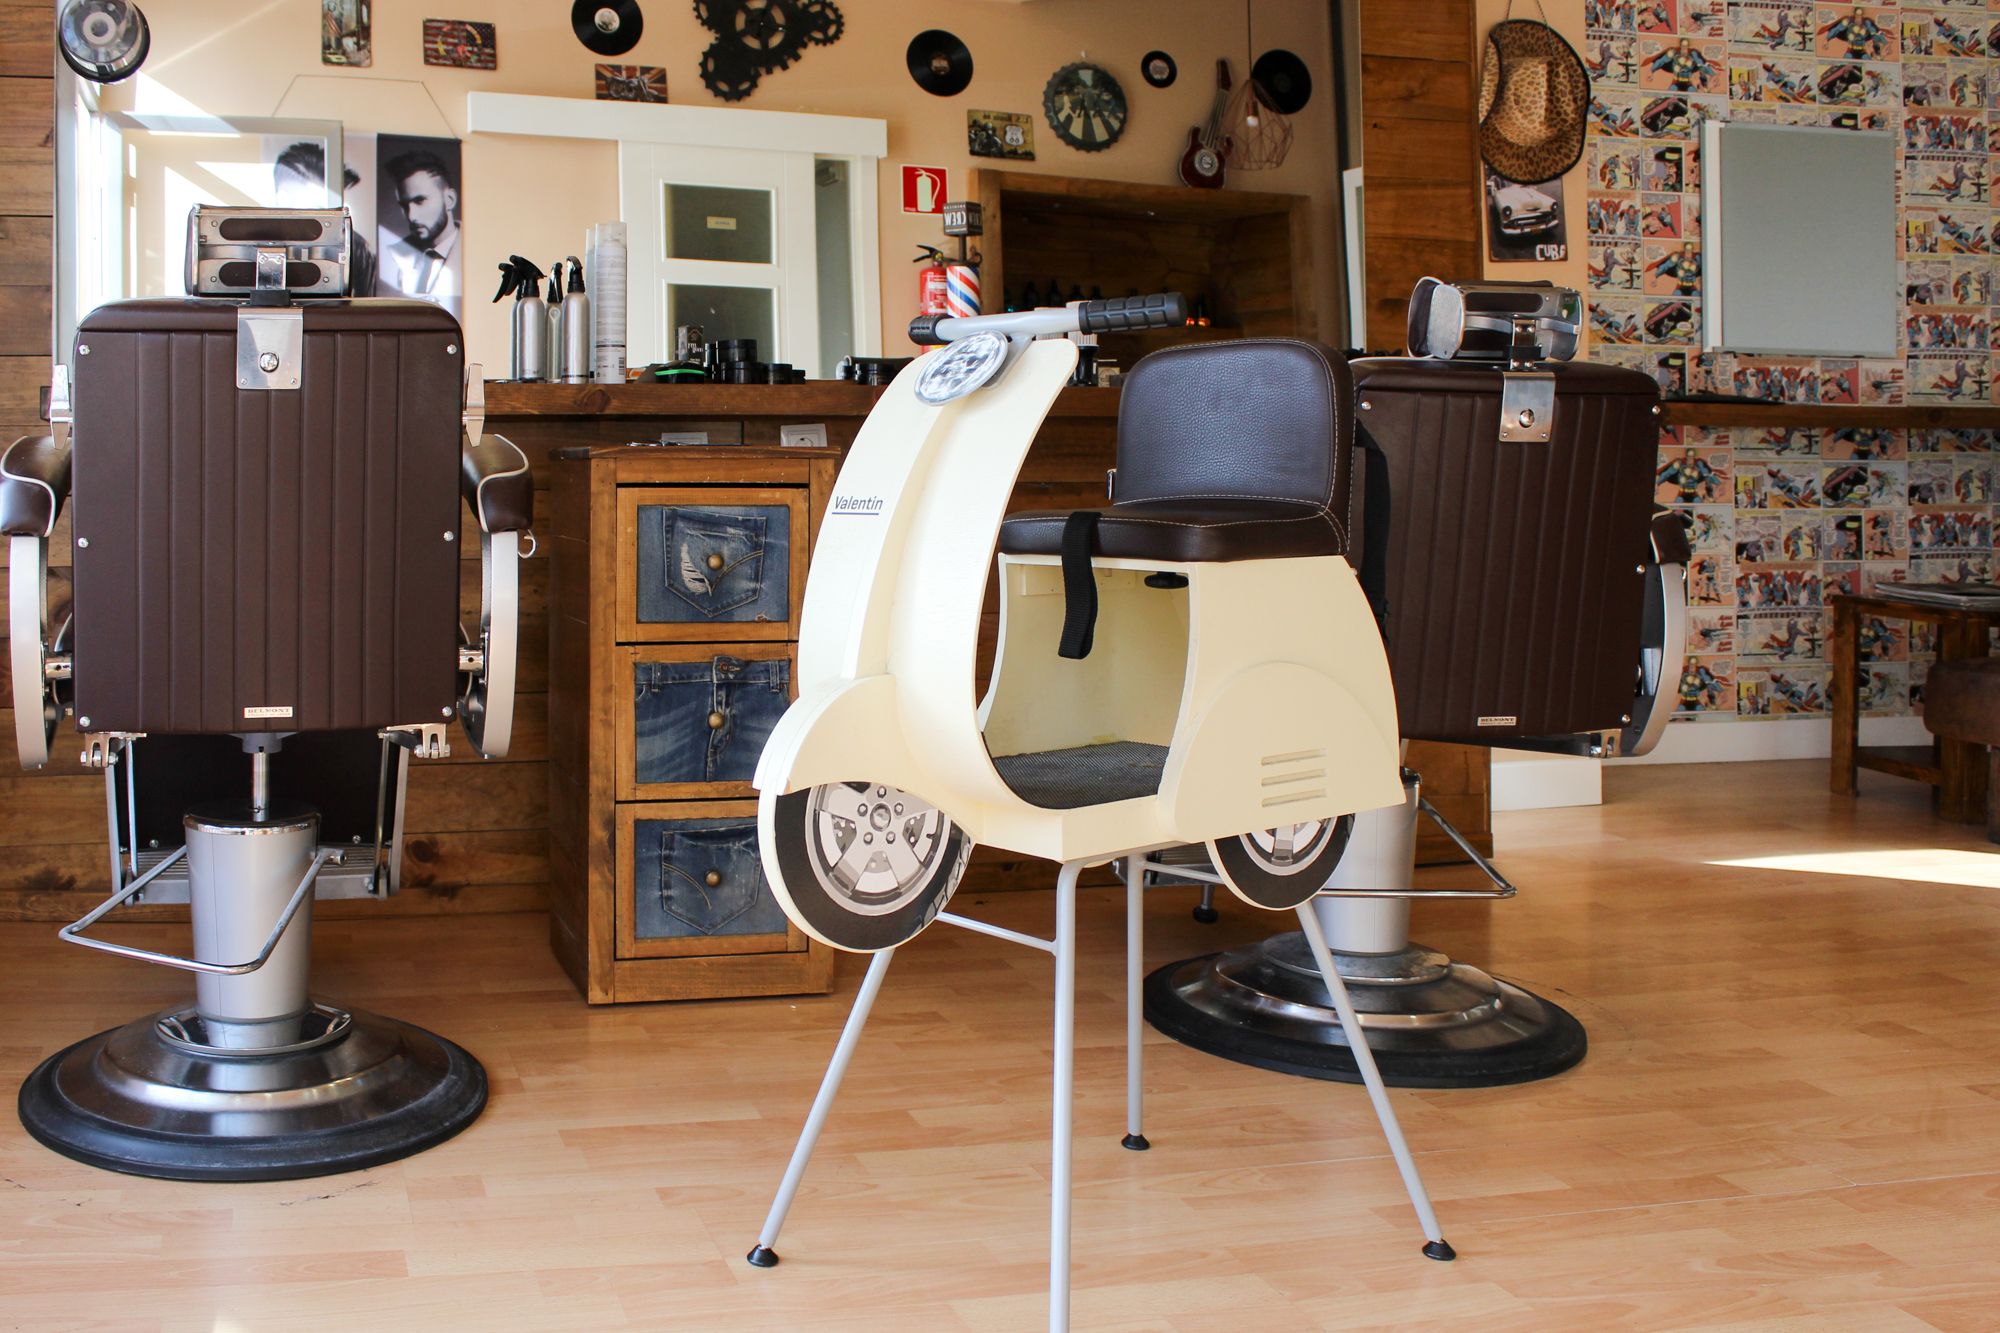 Foto 3 de Peluquería y barbería en Parla | Fabre Barber Shop